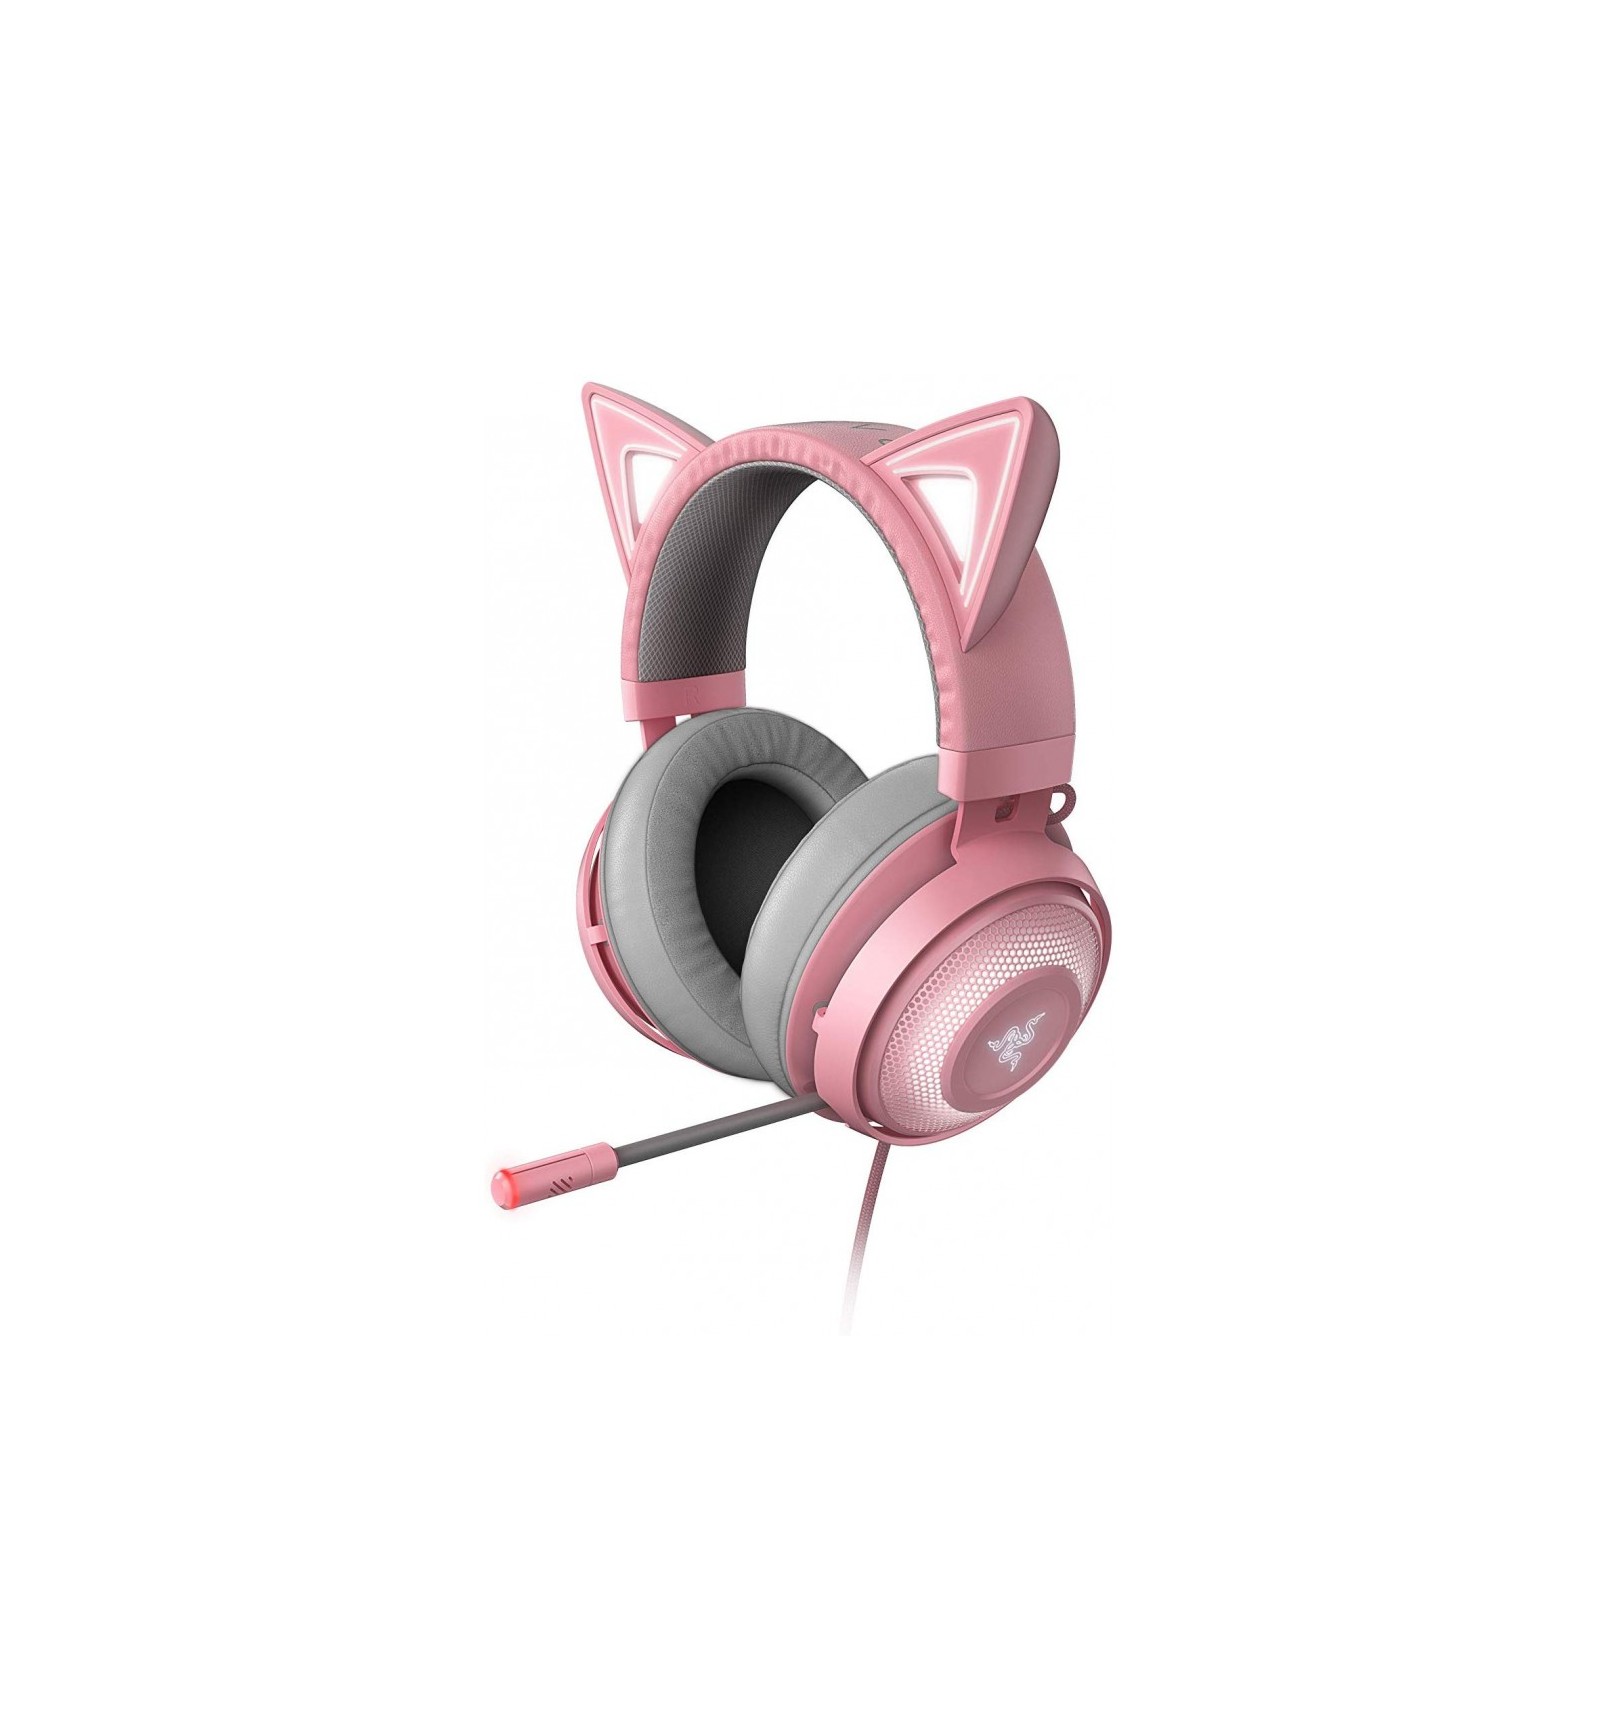 especificar collar Desmantelar Razer Kraken Quartz Kitty Edition - Comprar auriculares gaming rosa